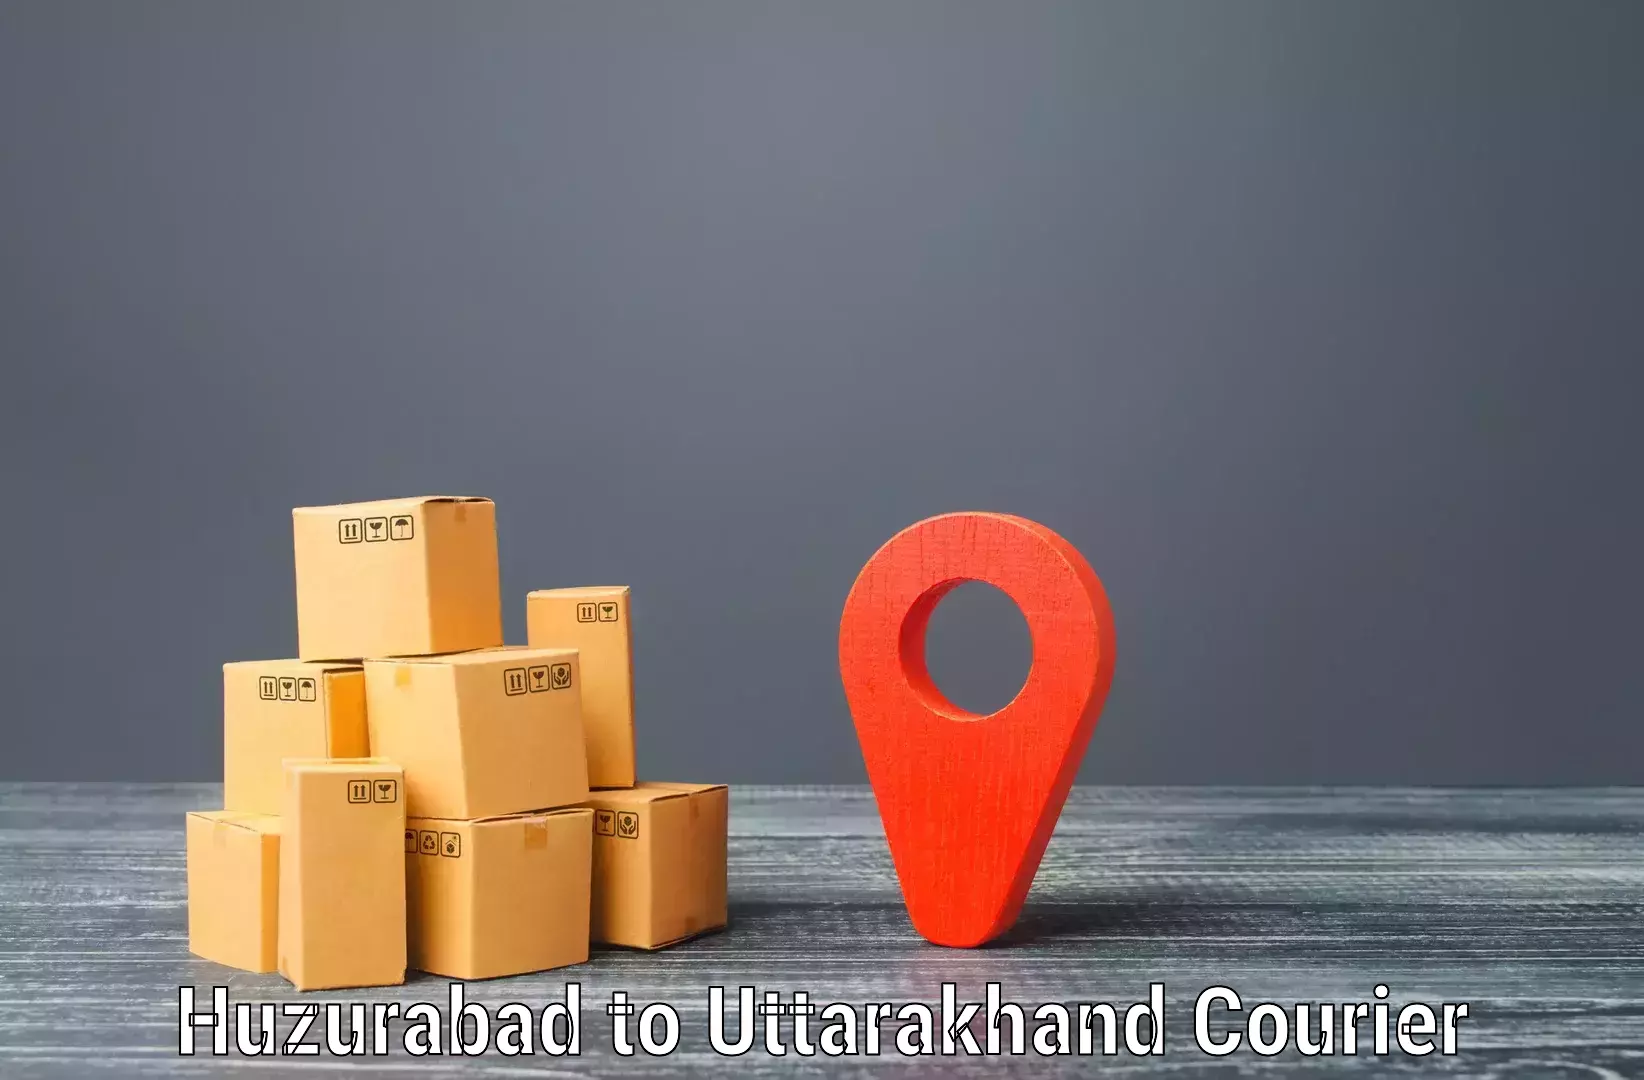 Express mail service Huzurabad to Lansdowne